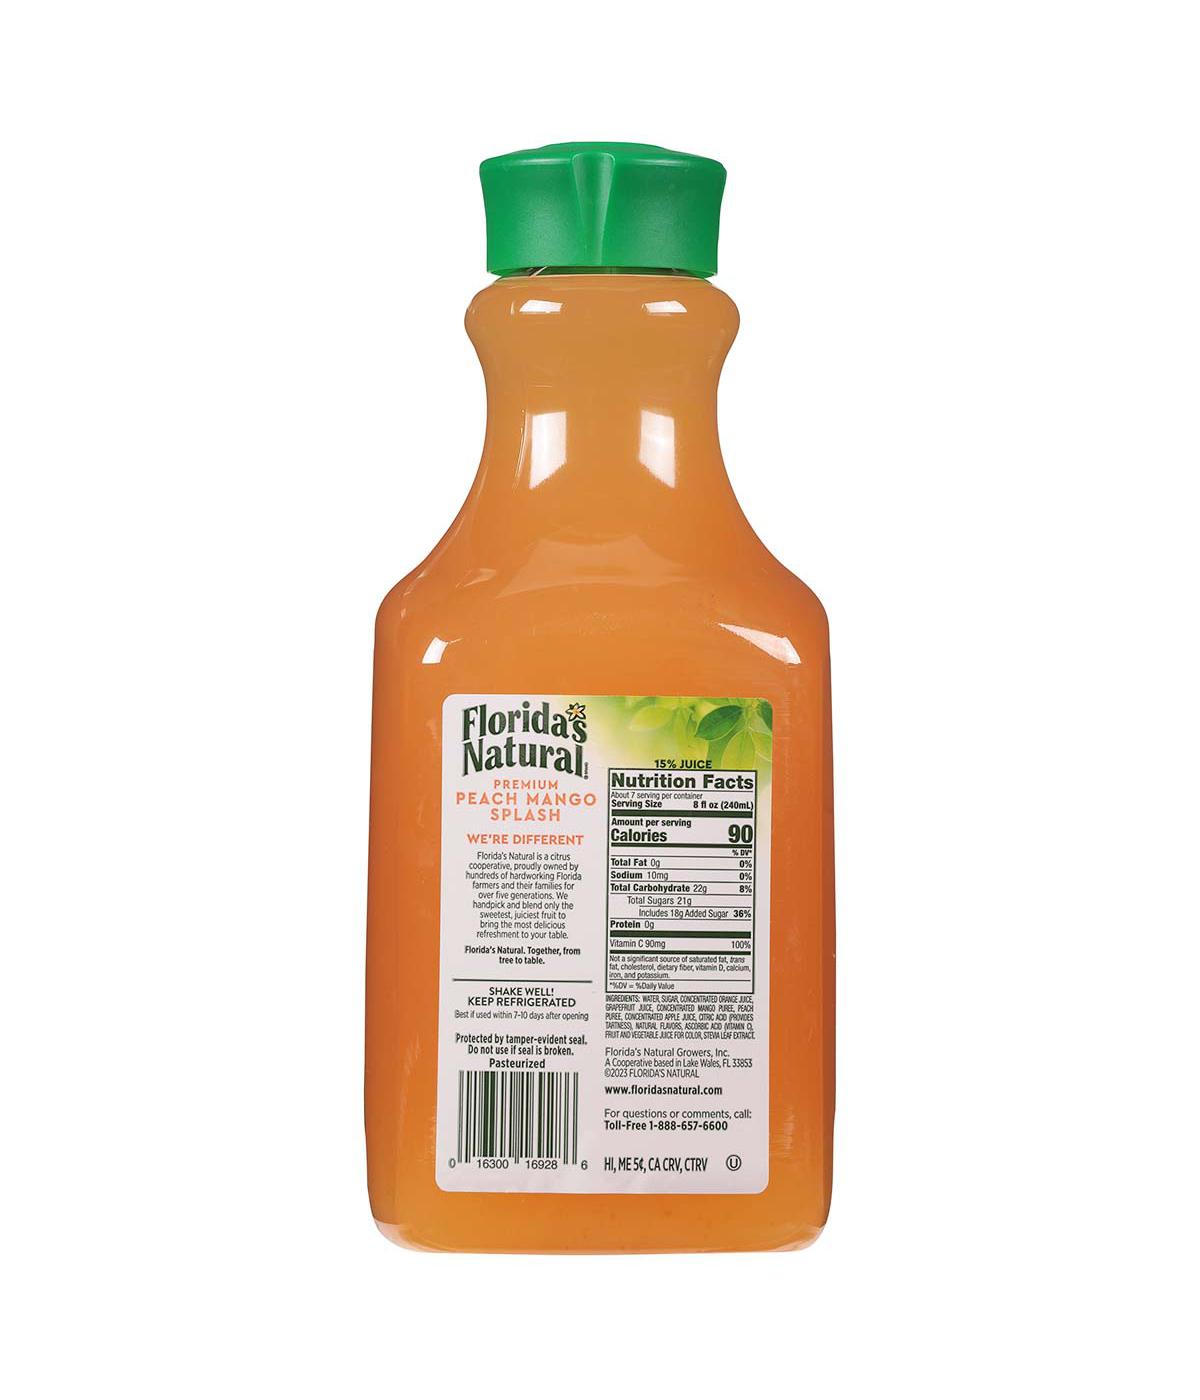 Florida's Natural Premium Peach Mango Splash Drink; image 2 of 2